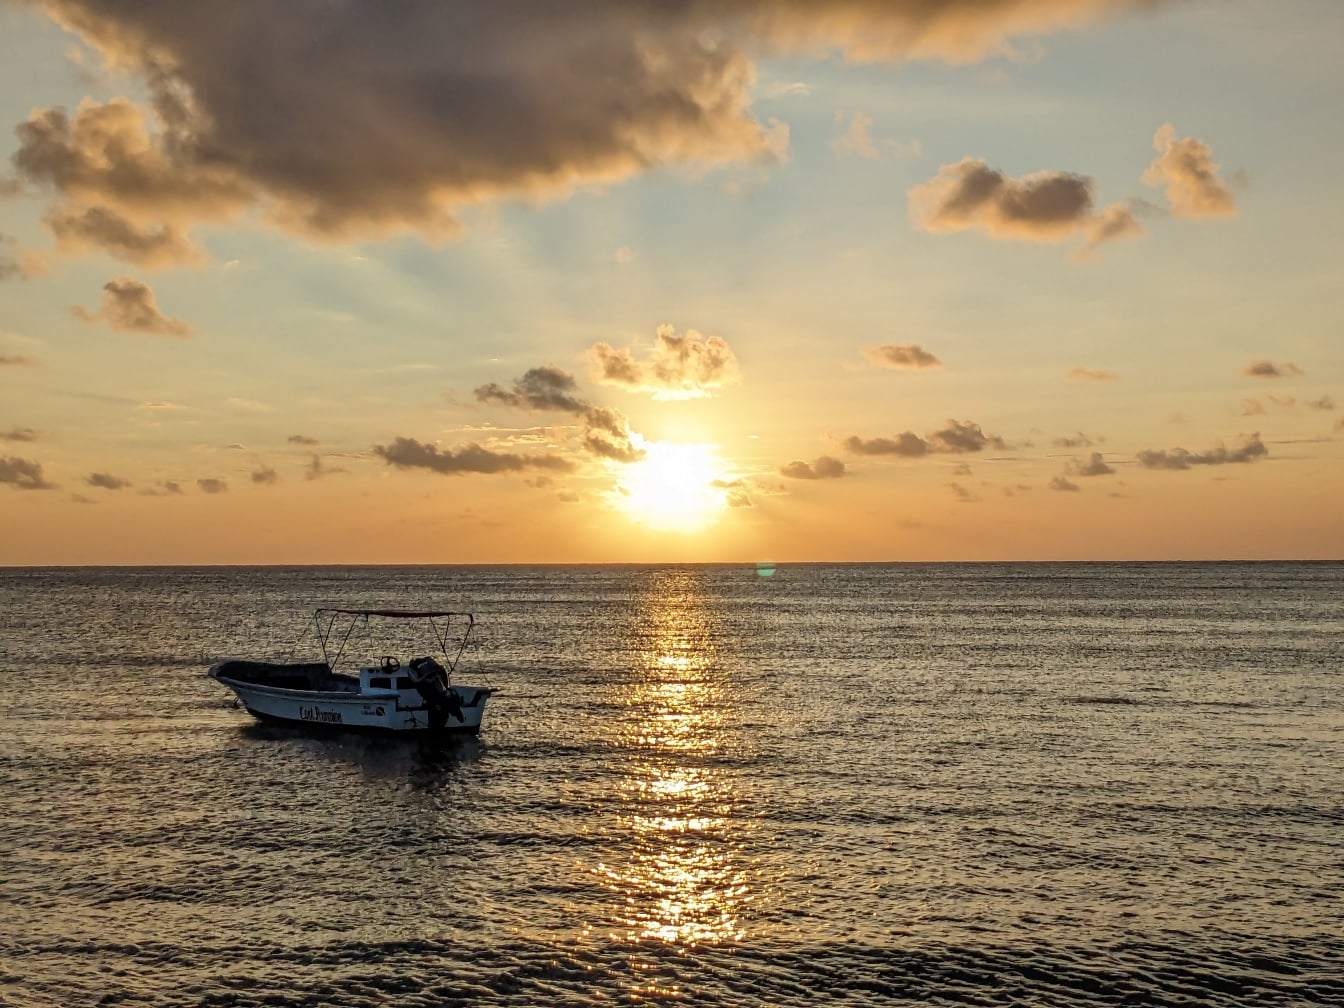 Mali brod na moru sa svijetlim sunčevim zrakama koji se reflektiraju na horizontu mora u zoru